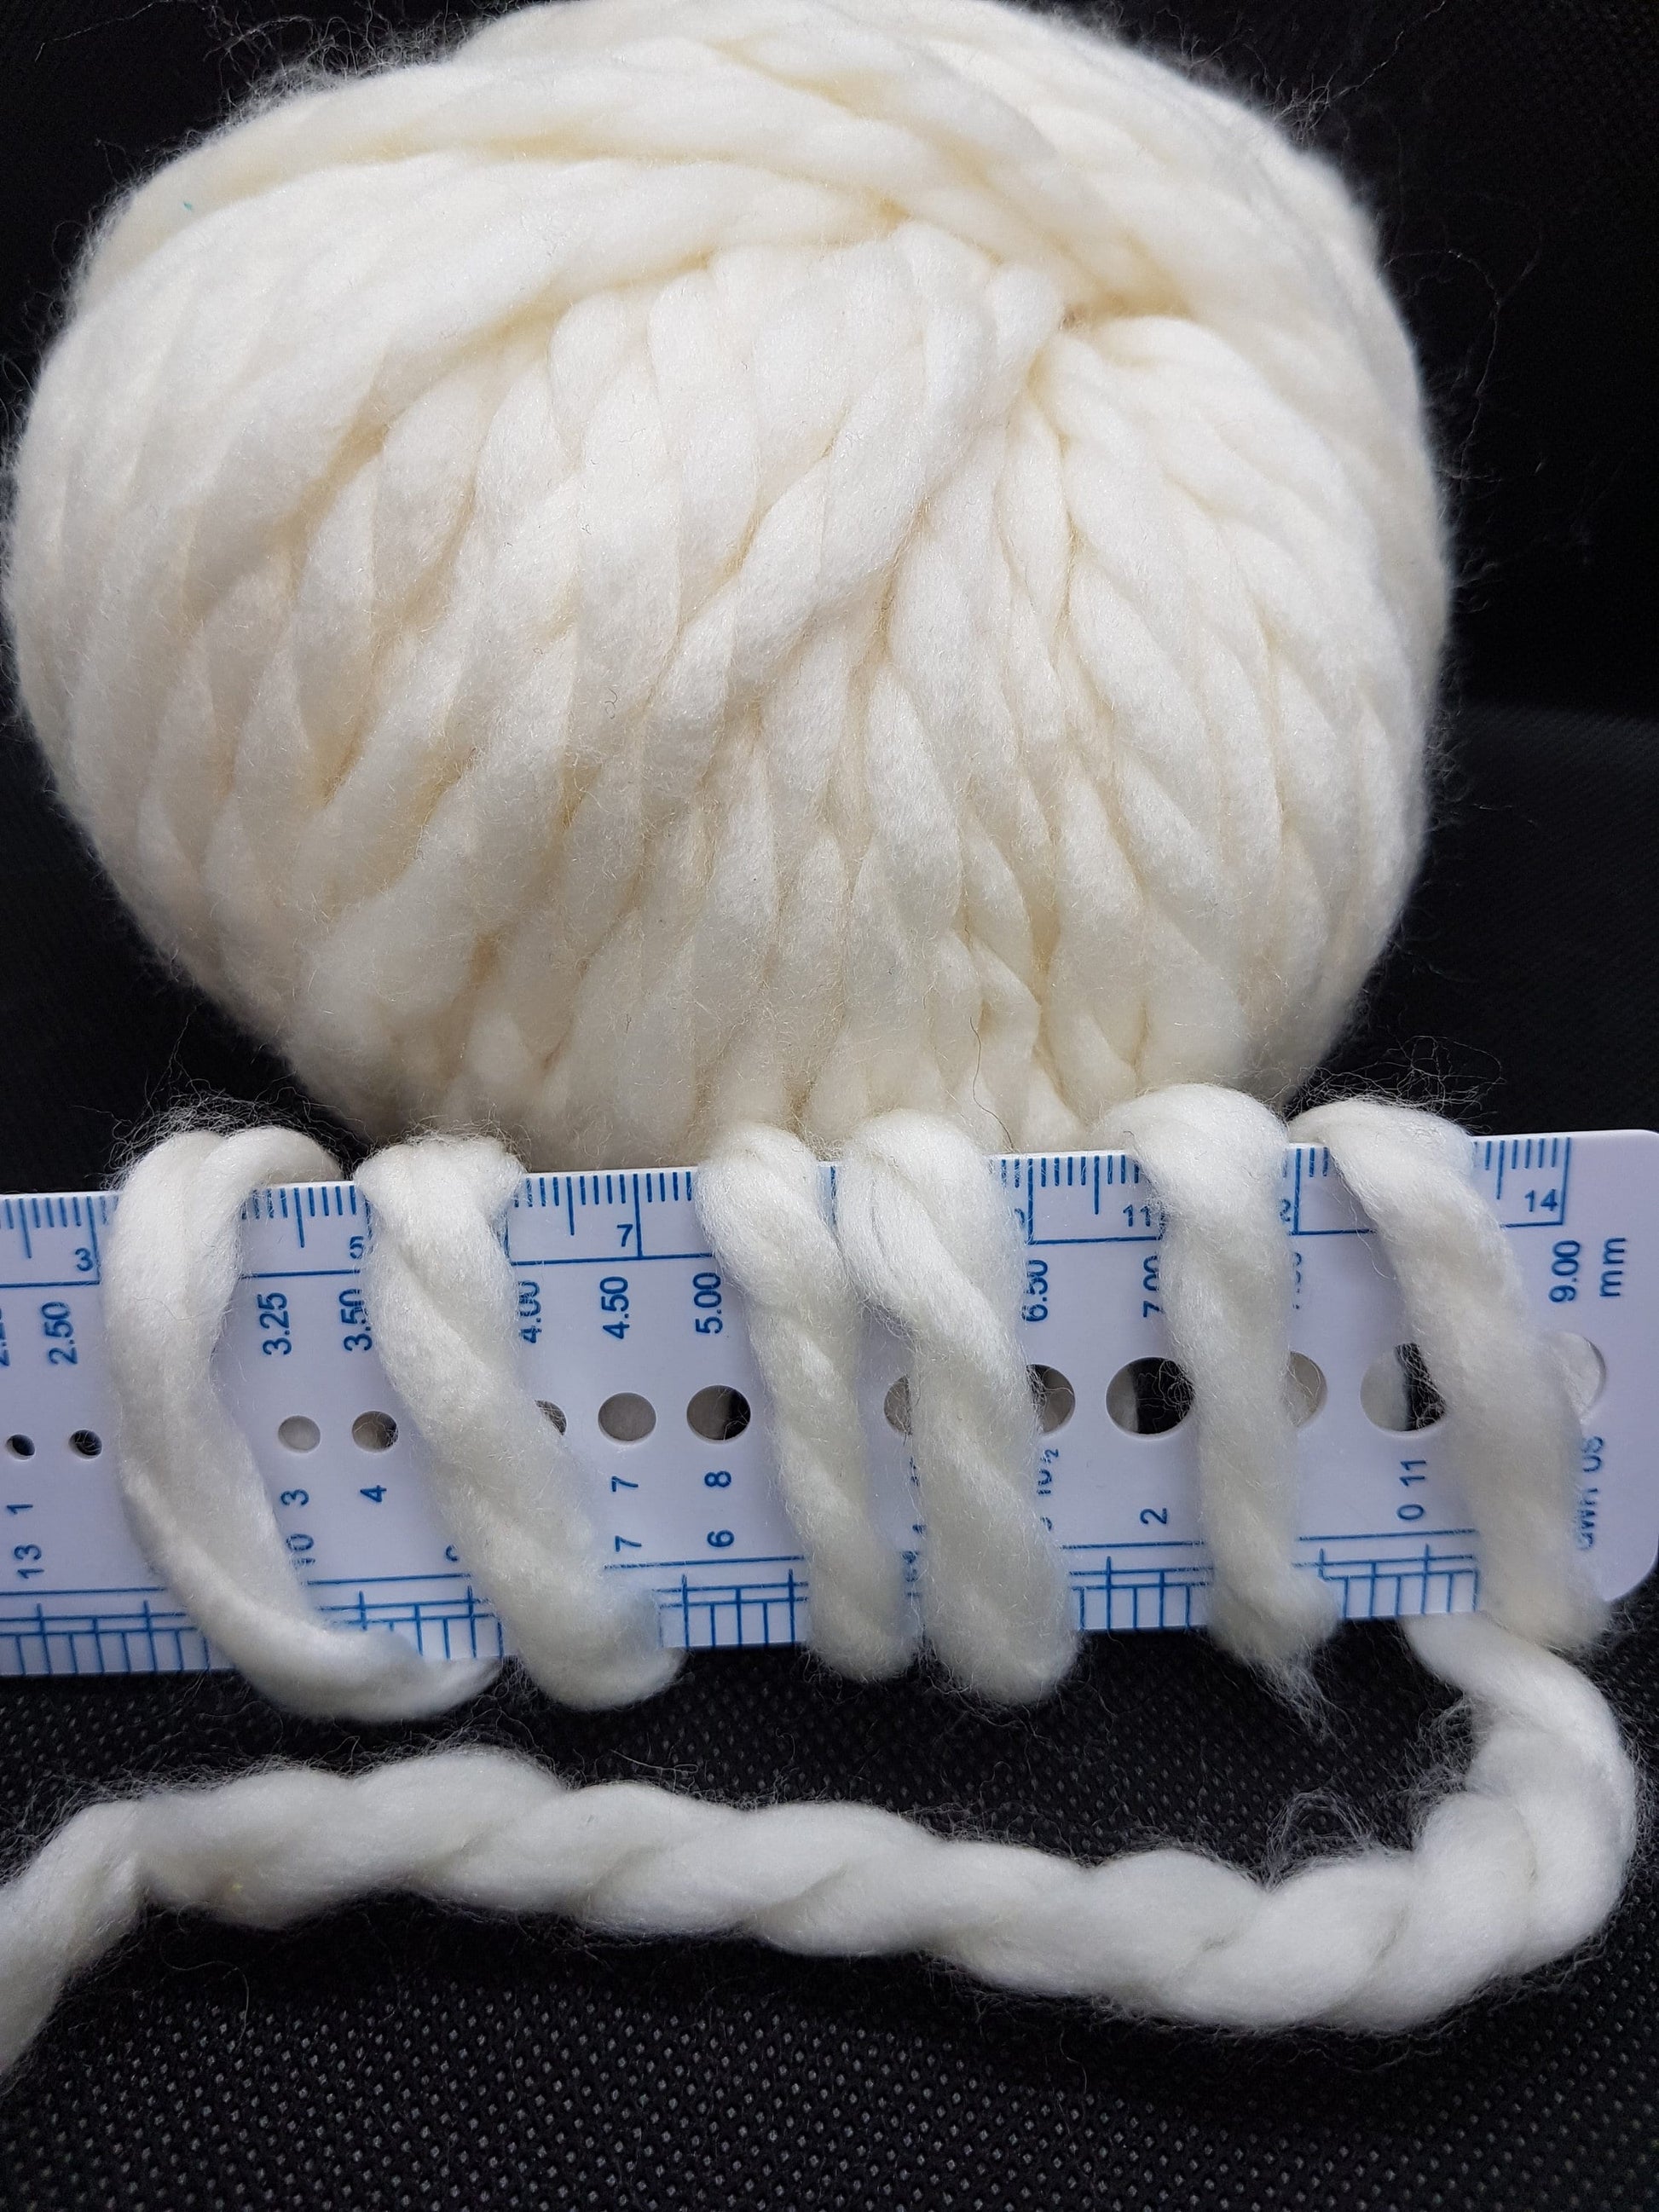 100g Merinos Extrafine Italian Super Bulky Knitting Yarn color White Natural N.76